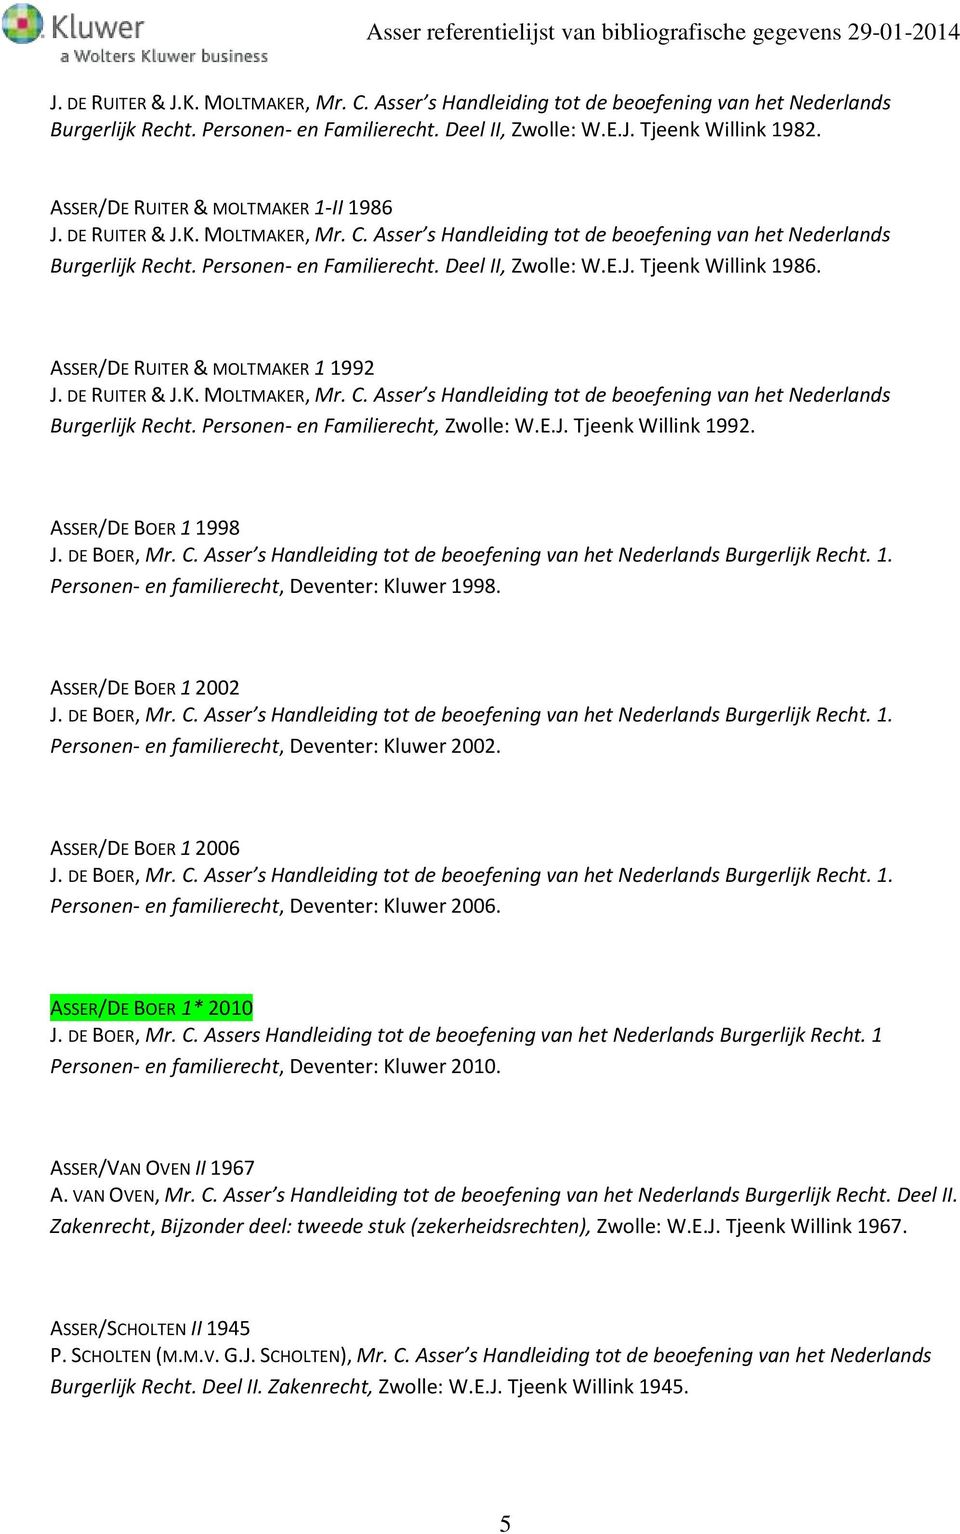 ASSER/DE RUITER & MOLTMAKER 1 1992 J. DE RUITER & J.K. MOLTMAKER, Mr. C. Asser s Handleiding tot de beoefening van het Nederlands Burgerlijk Recht. Personen- en Familierecht, Zwolle: W.E.J. Tjeenk Willink 1992.